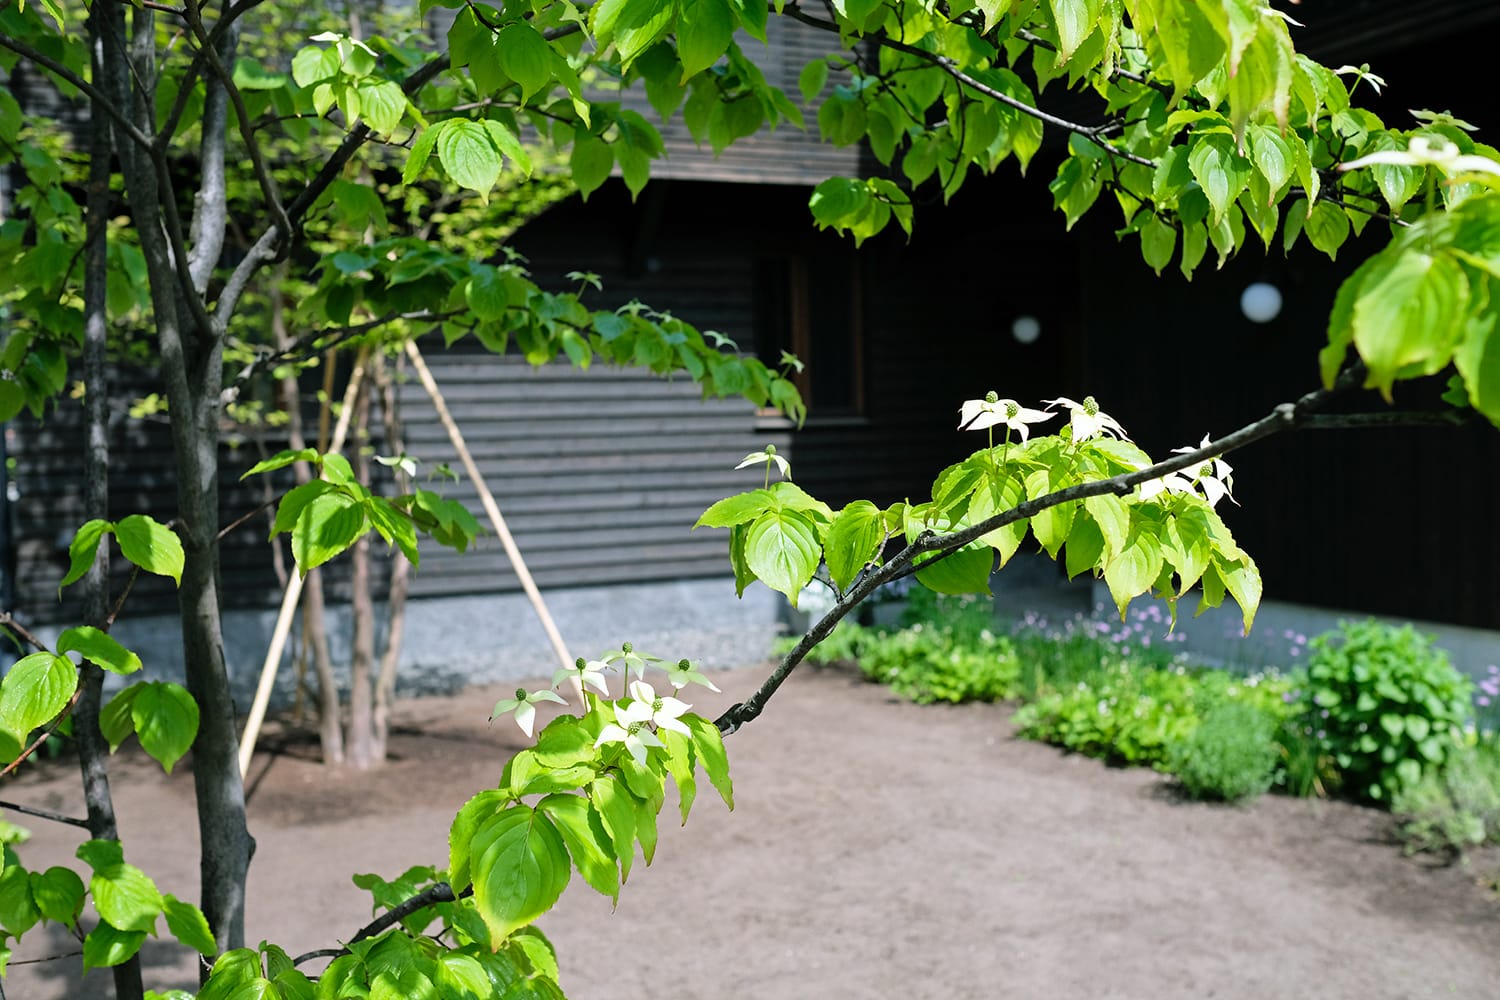 ヤマボウシの枝葉が被る家